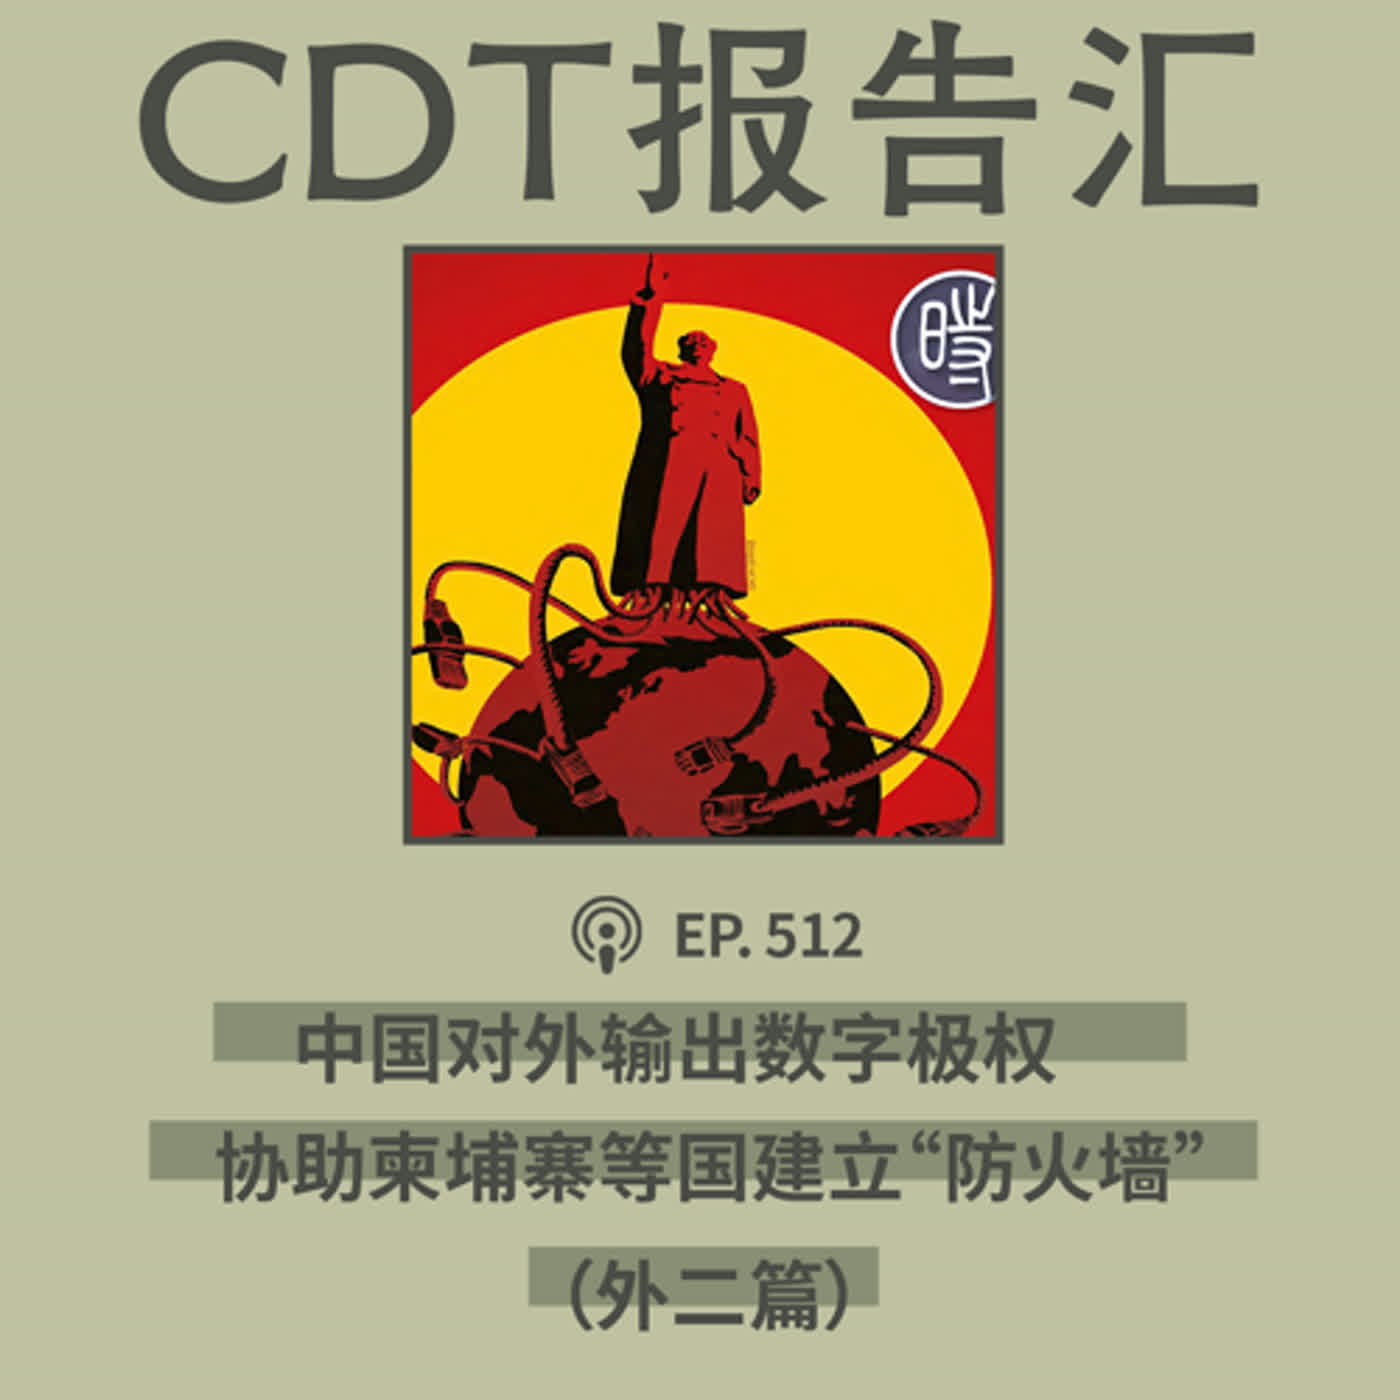 【第512期】CDT报告汇：中国输出数字极权，协助柬埔寨建立“防火墙”（外二篇）